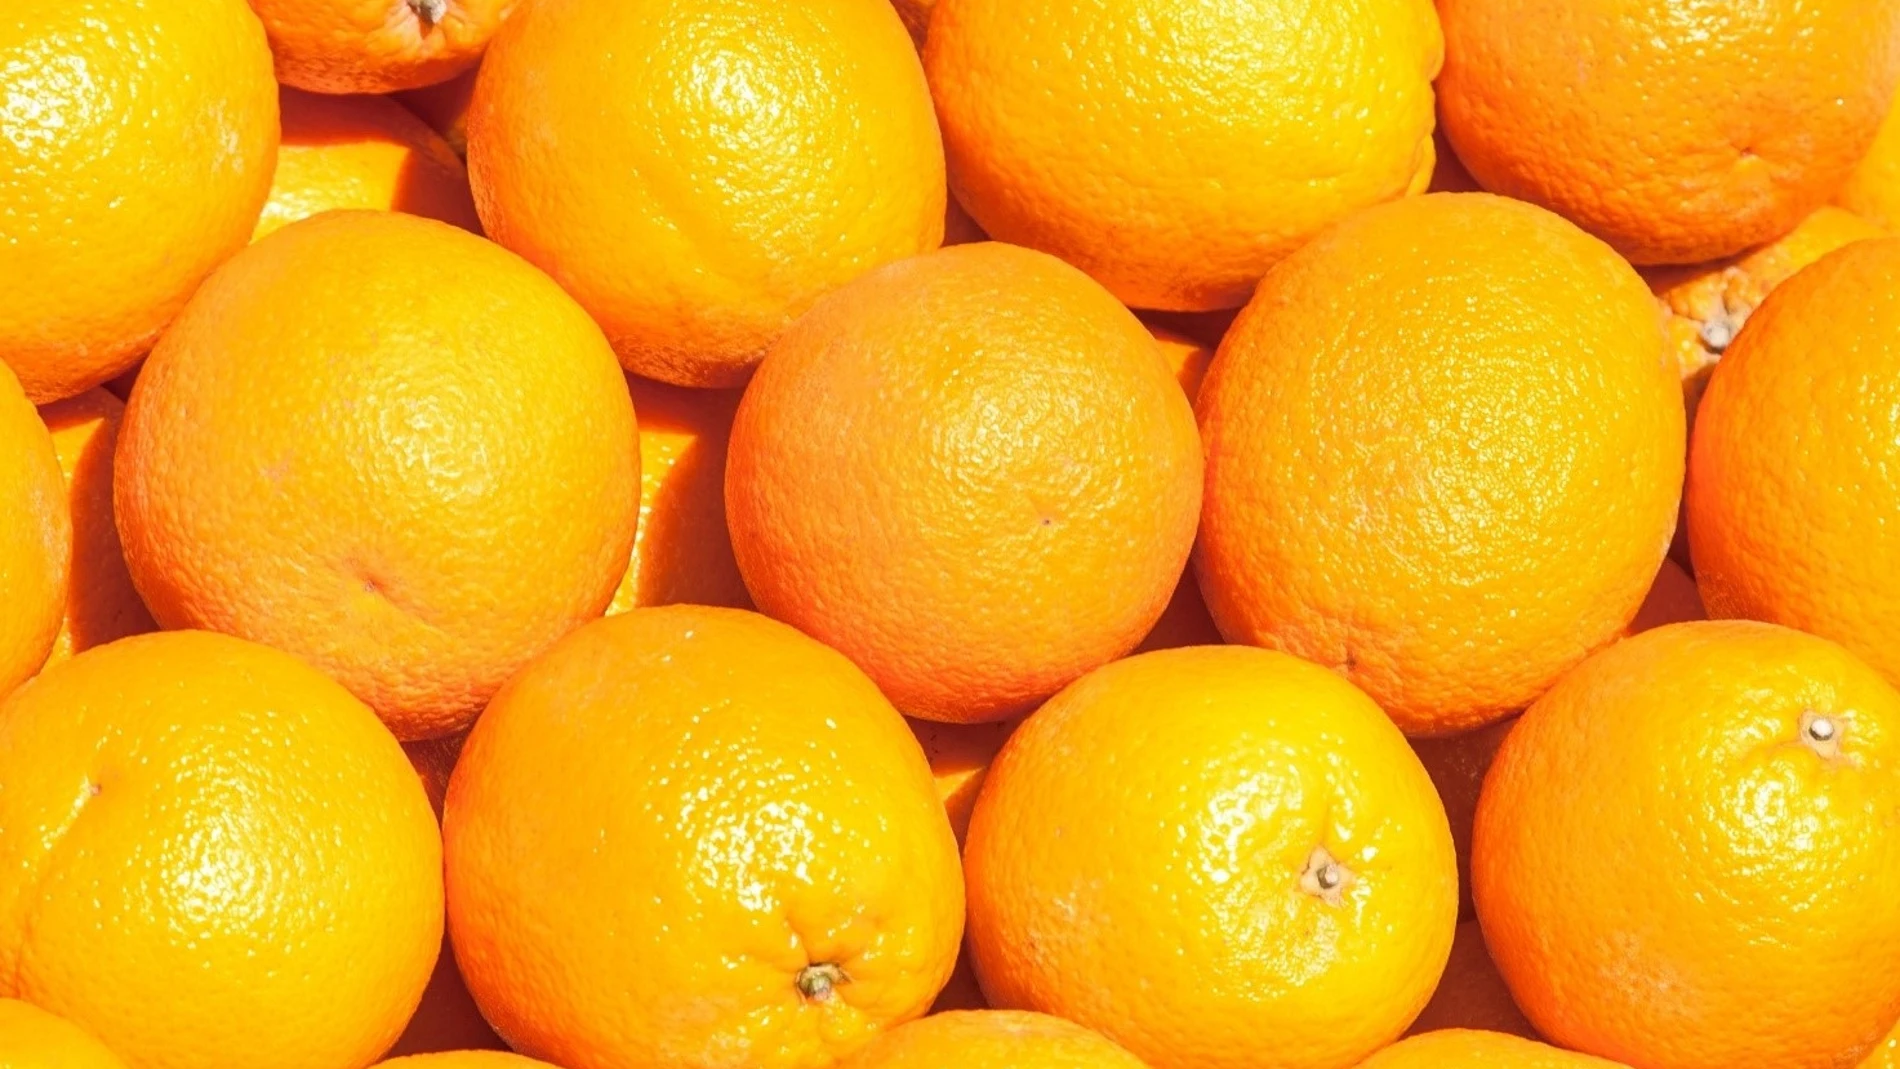 Una naranja tiene alrededor de 70 calorías y menos de 14 gramos de azúcar12/09/2022